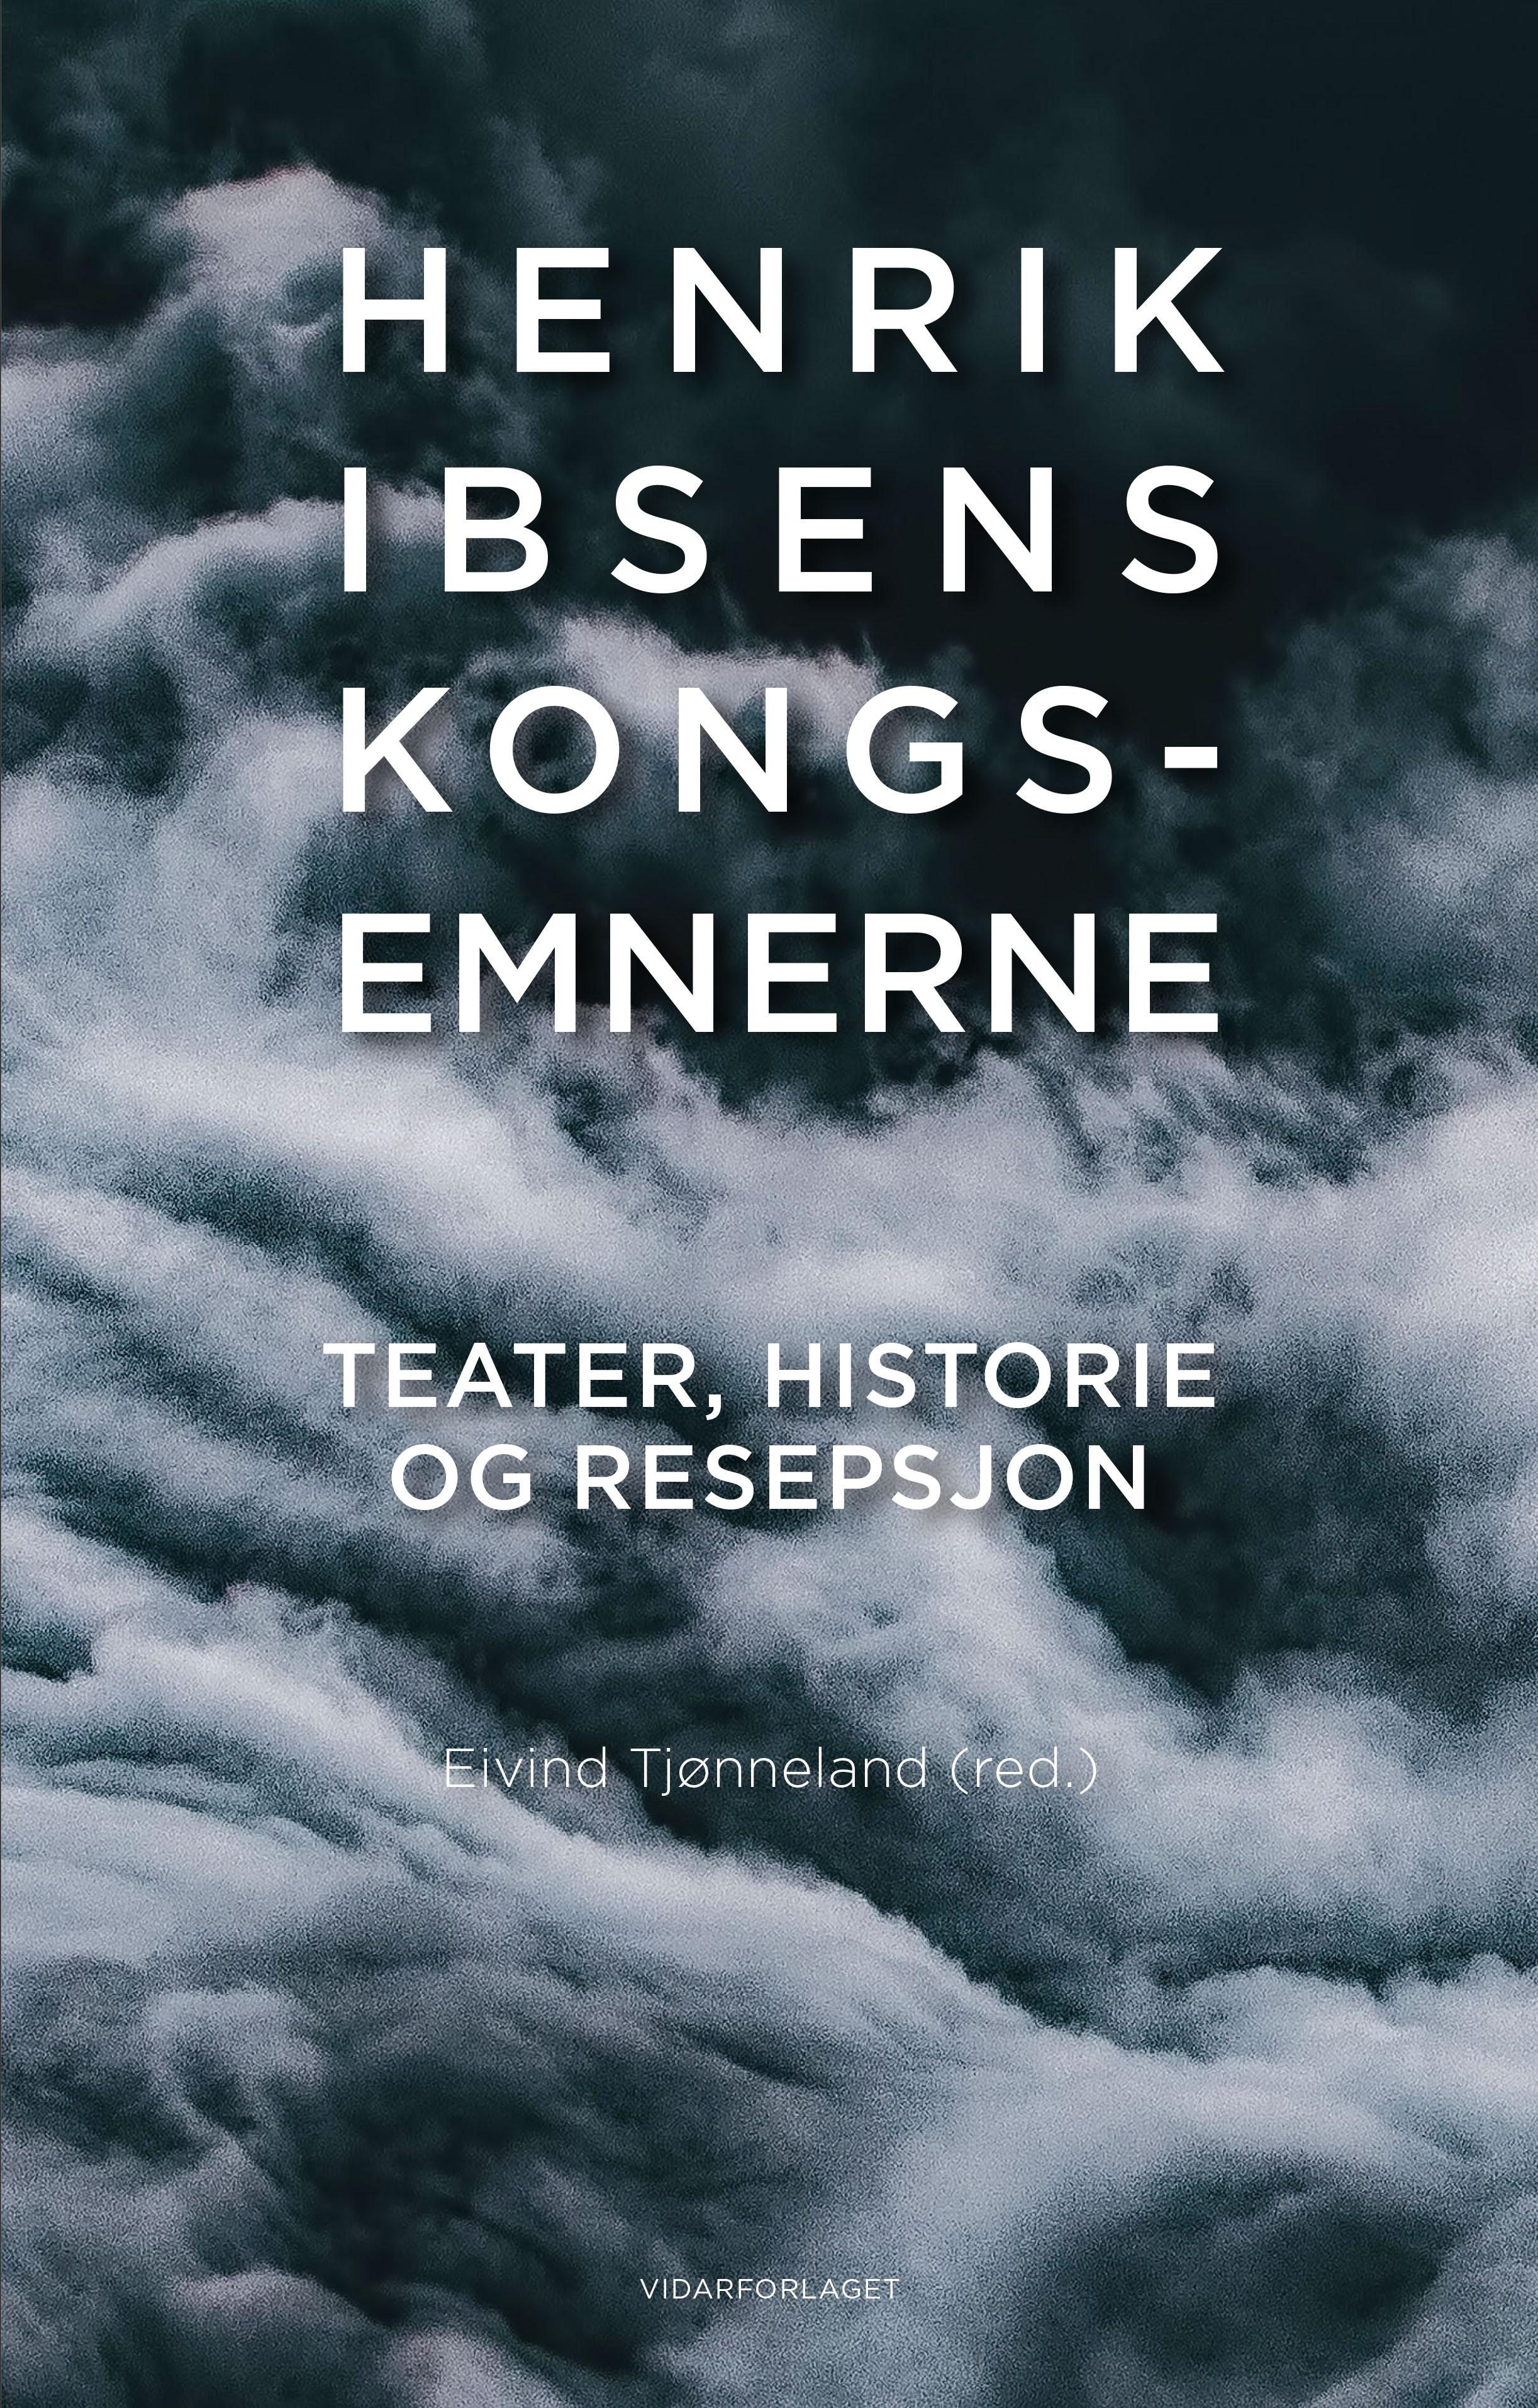 Henrik Ibsens Kongs-Emnerne: teater, historie og resepsjon